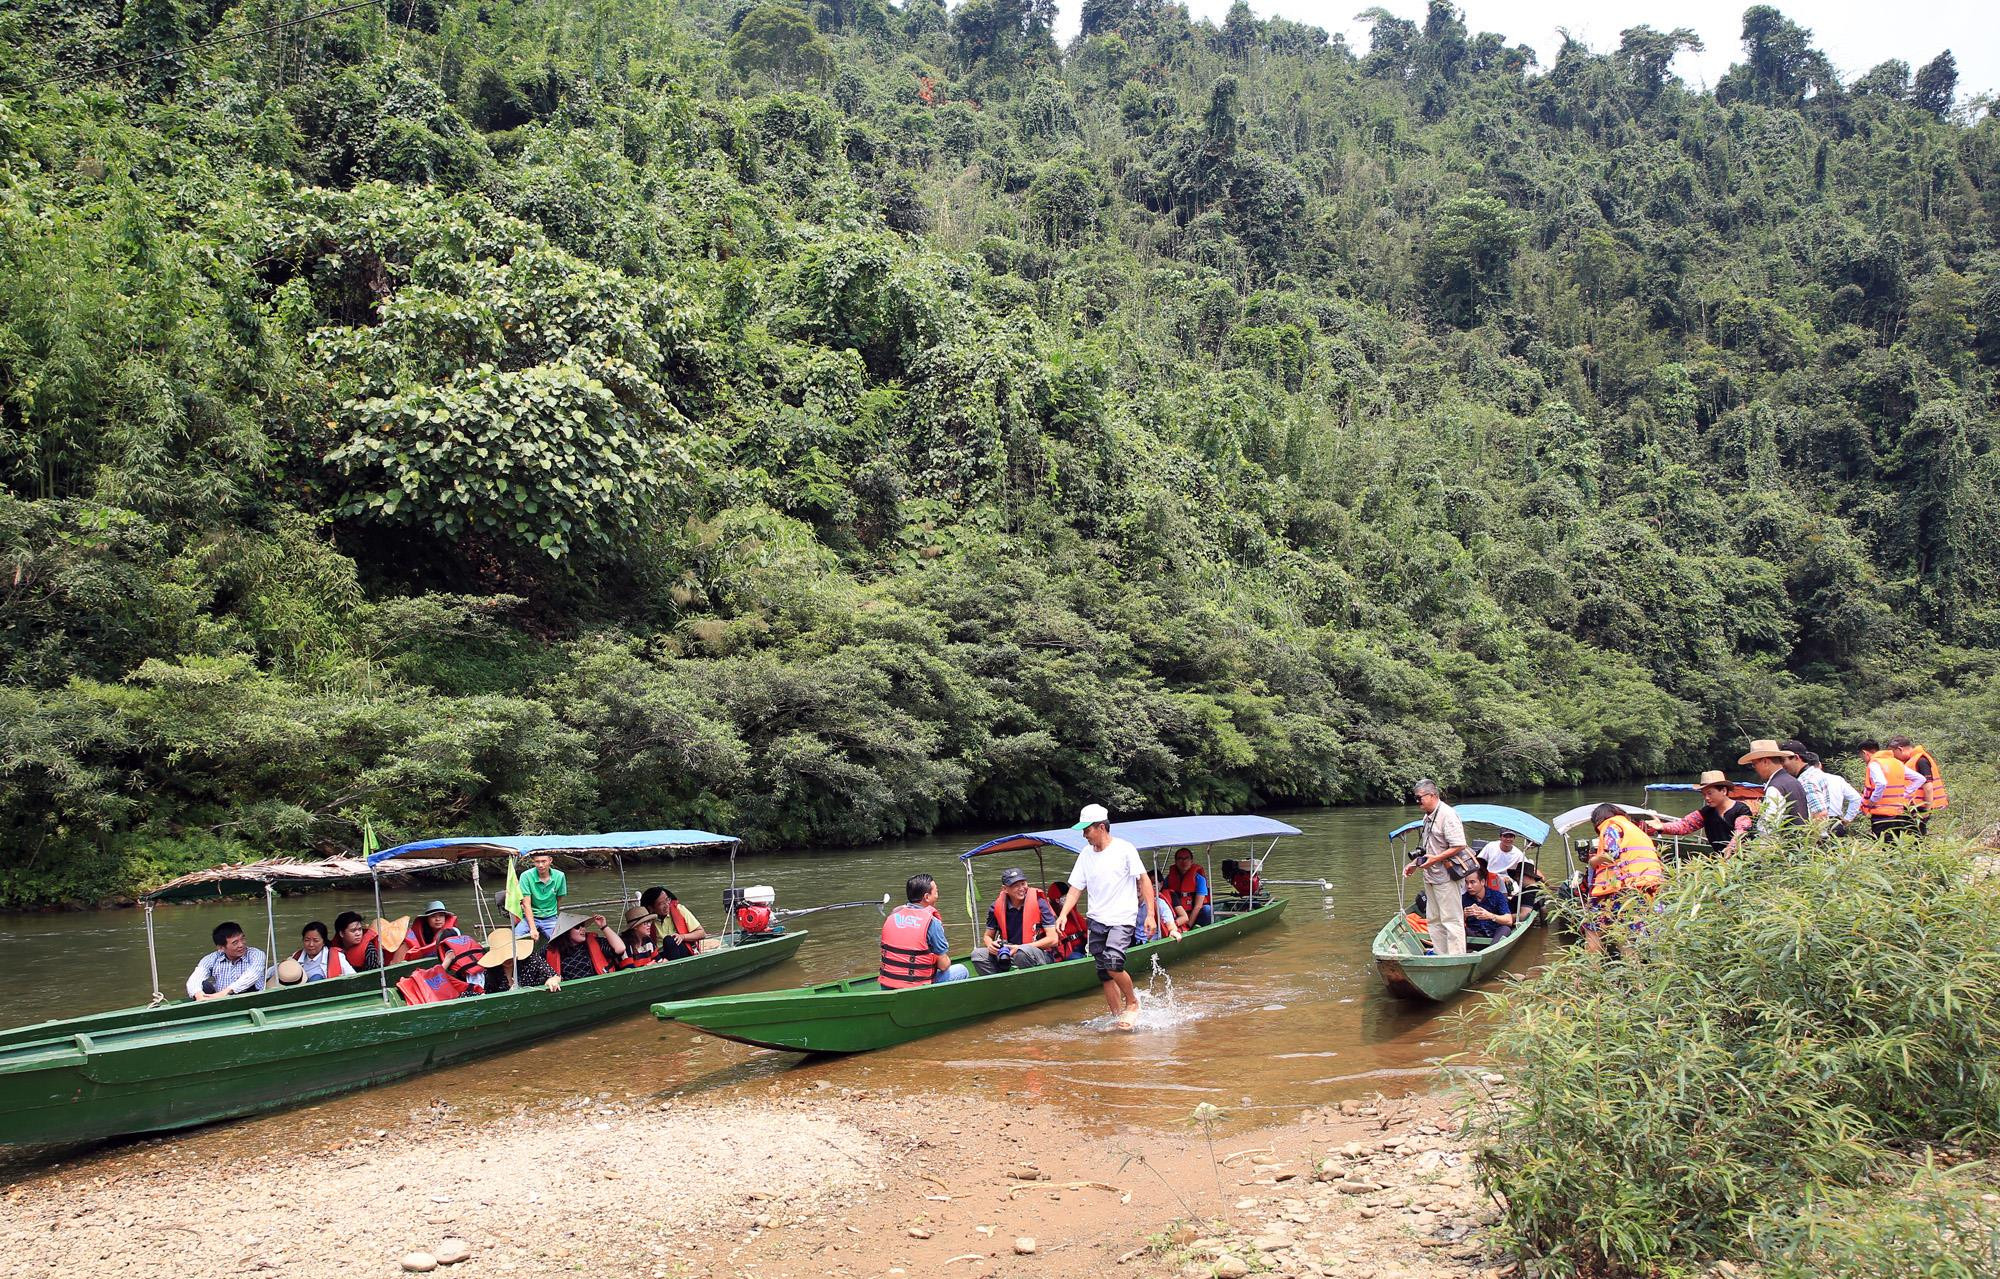 thành viên đoàn Famtrip thành phố Hồ Chí Minh tải nghiệm du thuyền sông Giăng. Ảnh: Hồ Phương